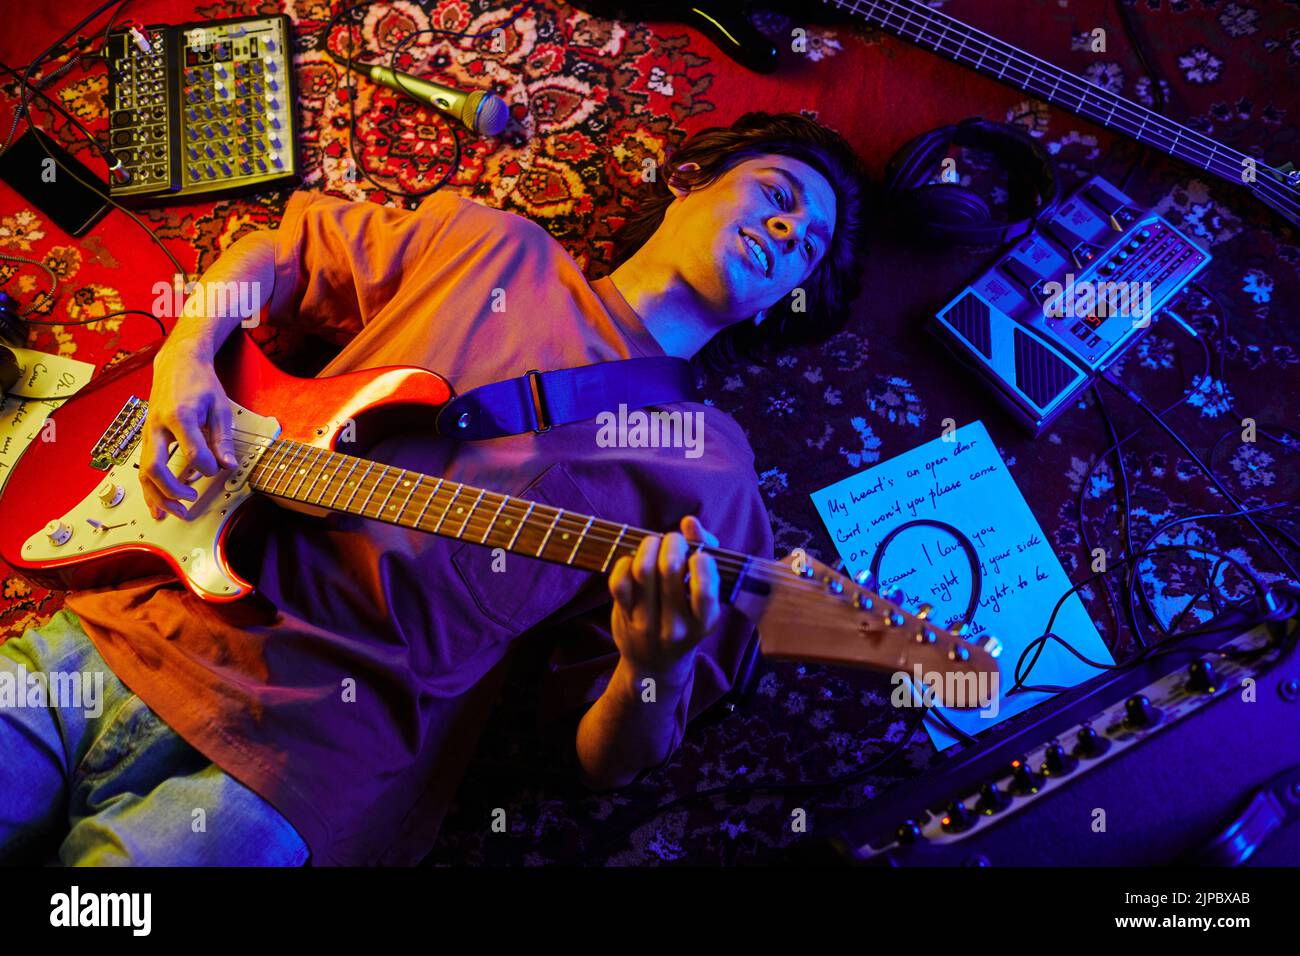 Imagen superior de un joven músico tocando la guitarra tumbado sobre una alfombra iluminada por la luz de neón Foto de stock